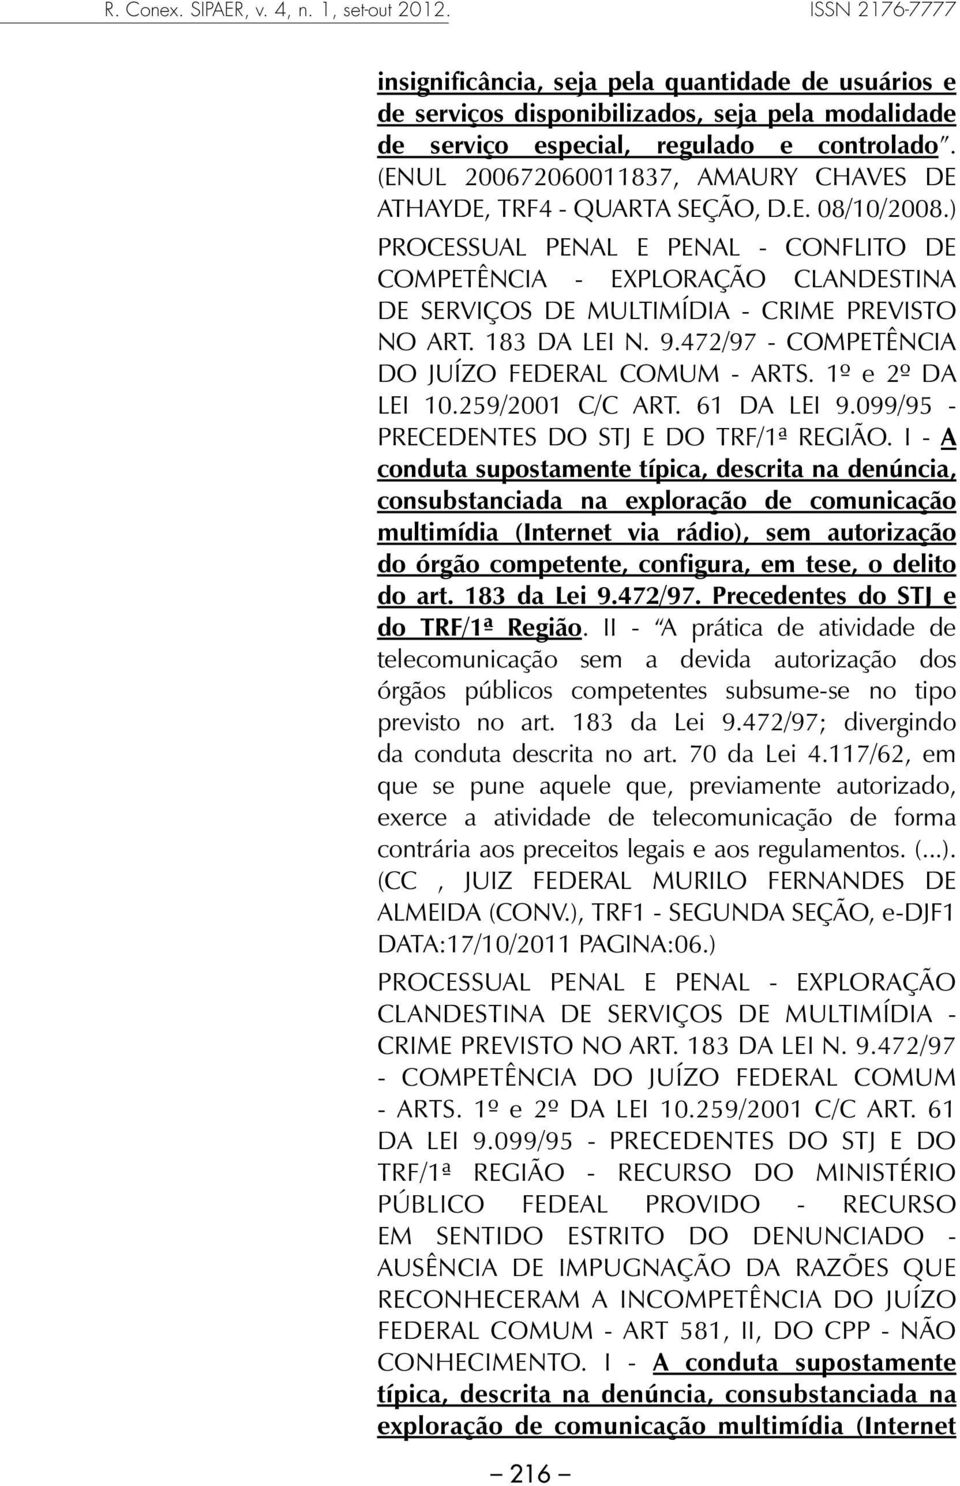 (ENUL 200672060011837, AMAURY CHAVES DE ATHAYDE, TRF4 - QUARTA SEÇÃO, D.E. 08/10/2008.